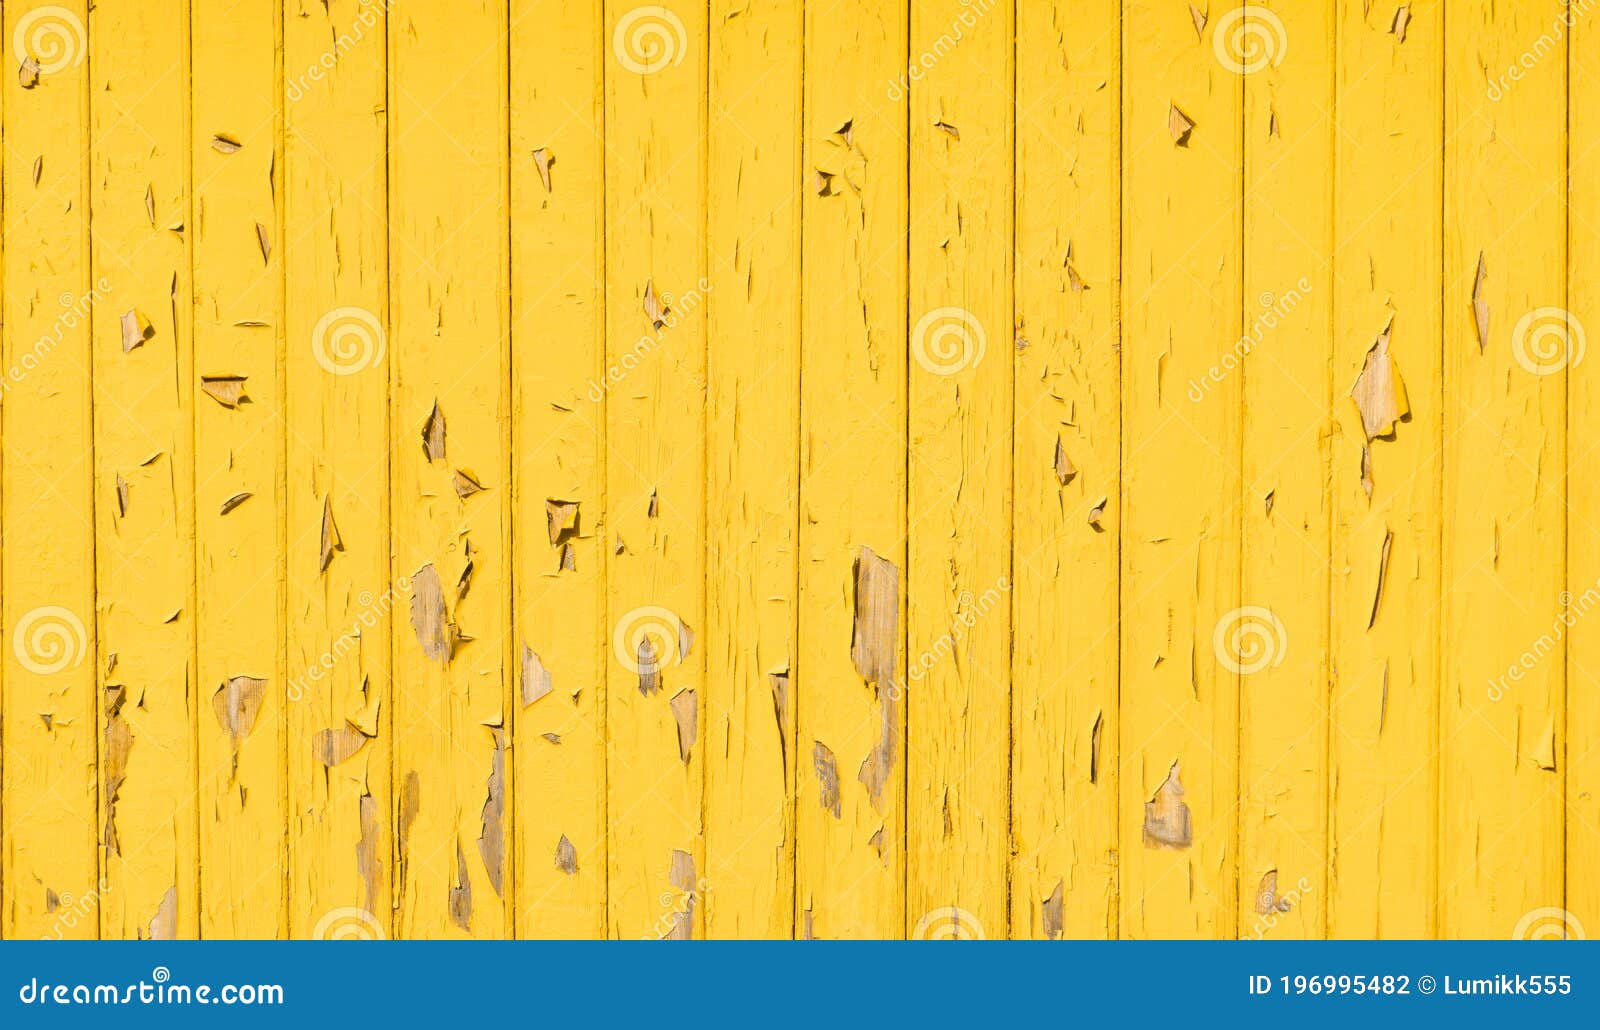 Hình nền tường gỗ màu vàng cổ điển đem tới cho bạn không gian ấm áp và thoải mái hơn khi làm việc. Nét cổ điển đầy thanh lịch sẽ tạo nên không gian tuyệt vời cho mọi thiết kế của bạn.